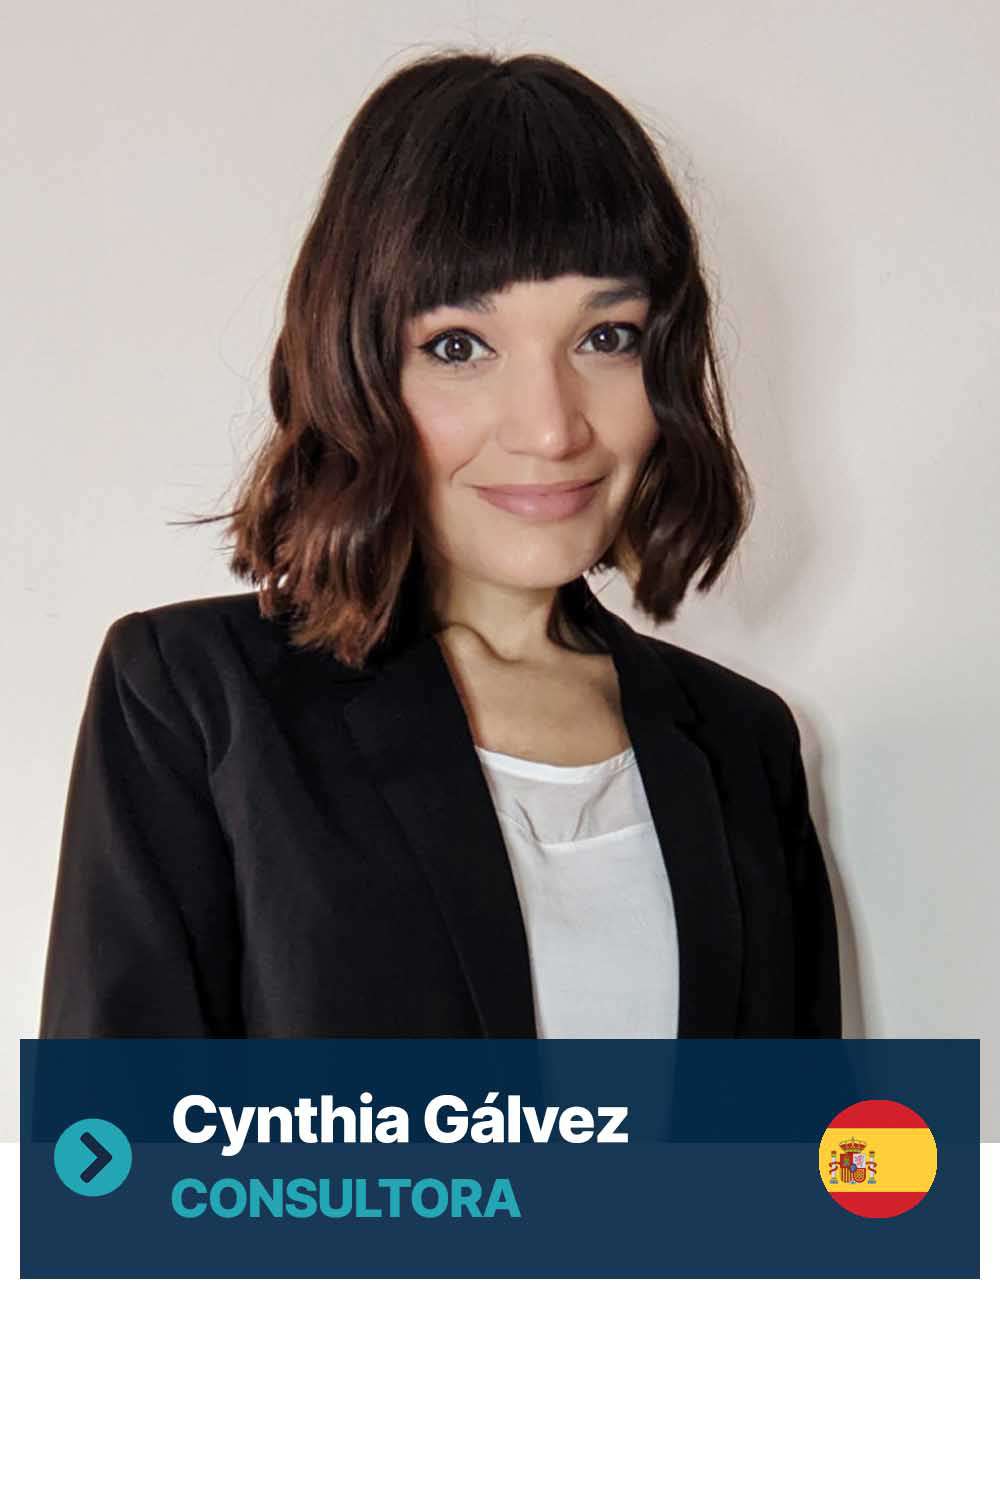 Cynthia Galvez